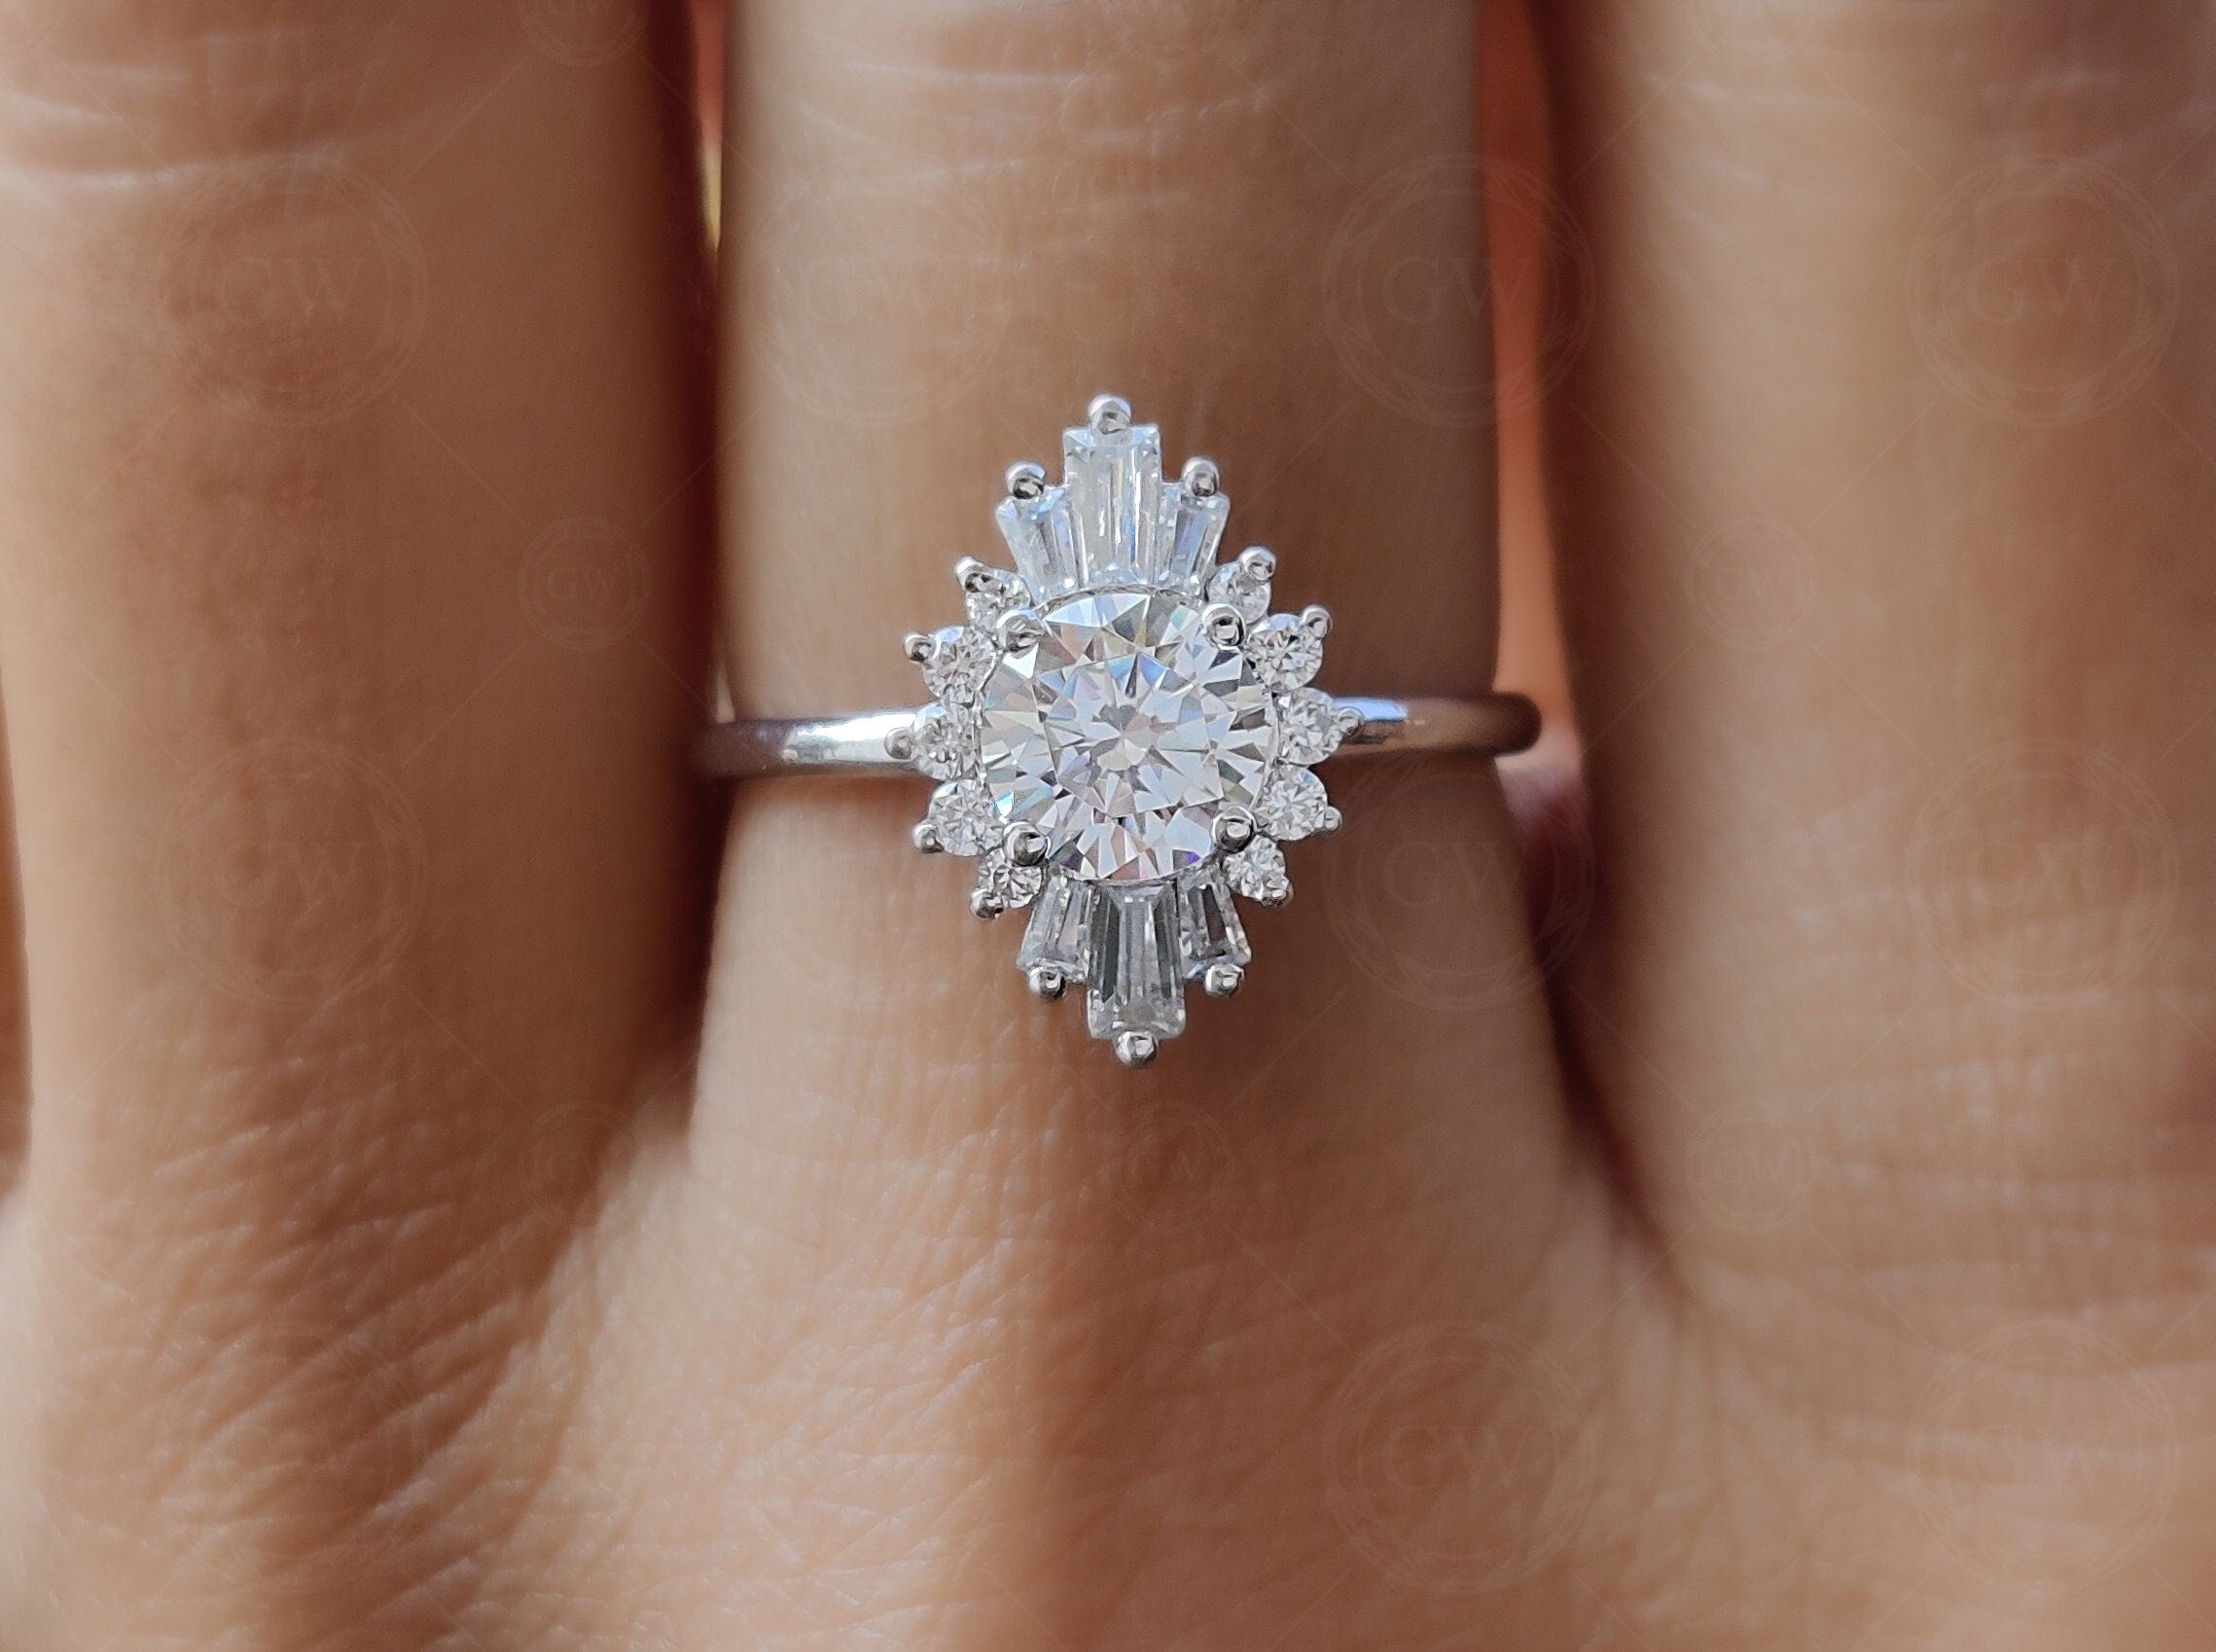 Vintage Inspired Engagement Ring, Art Deco Baguette Sunburst Ring, Round Moissanite Halo Ring, Unique Promise Rings For Women, Gold Ring